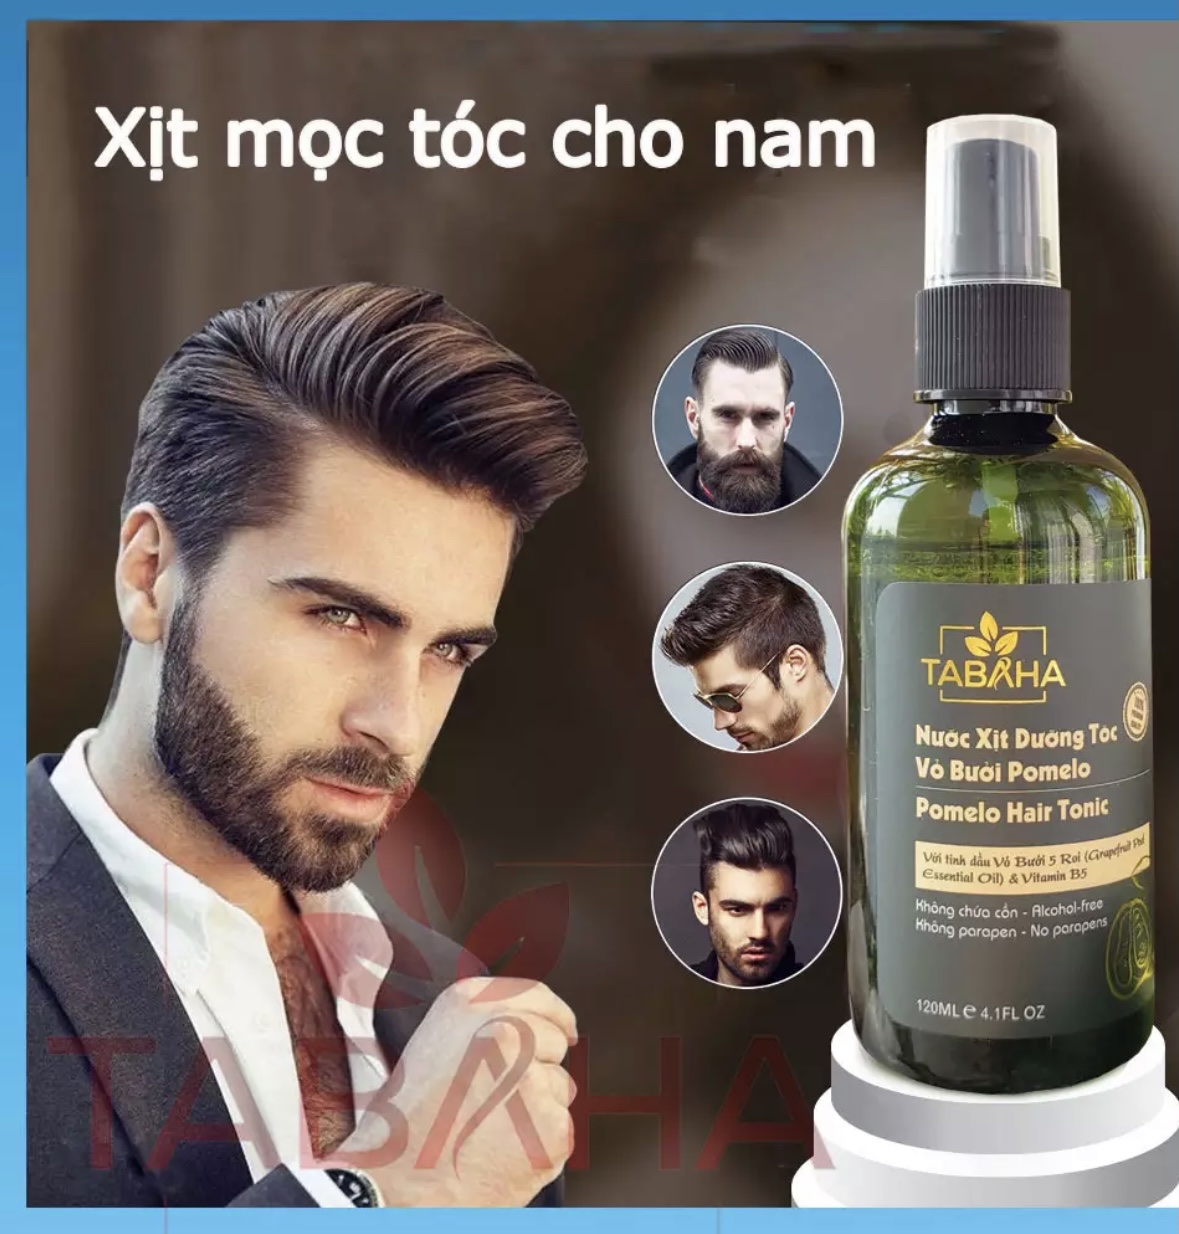 3 tips cơ bản chọn sản phẩm dưỡng tóc cho nam  ELLE Man Việt Nam